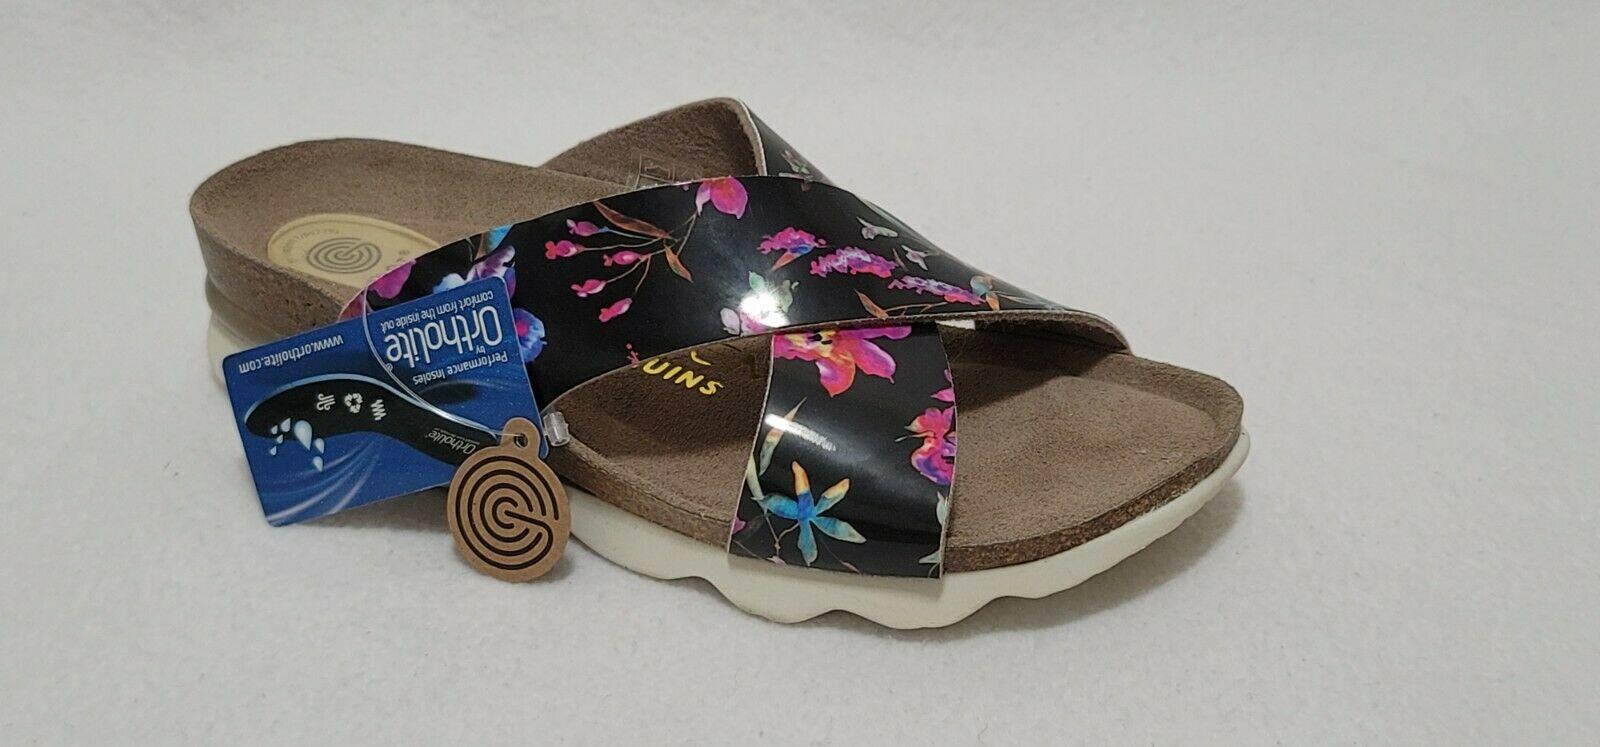 Ethem Genuins Women’s Leather Floral Slides Comfort Sandals Made In Spain EUR 39 - SVNYFancy